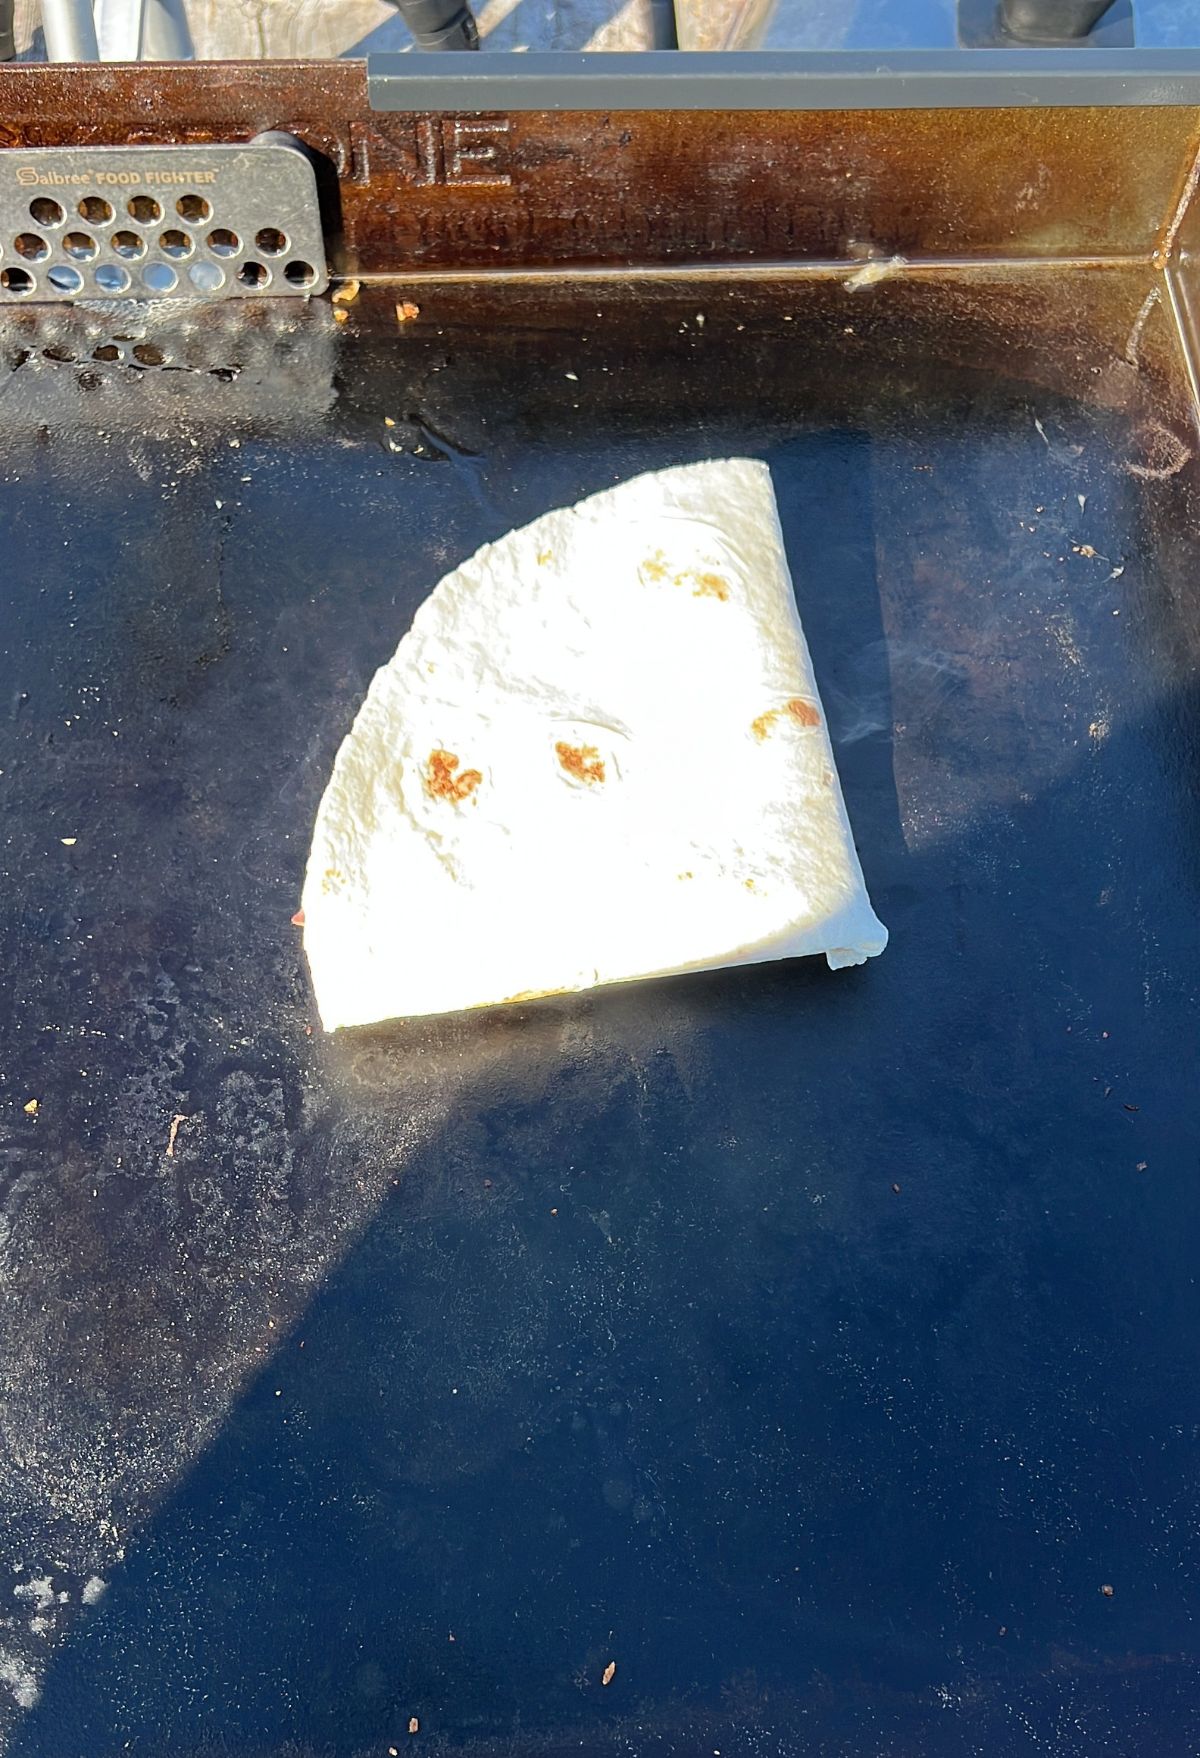 A half quesadilla on a griddle.